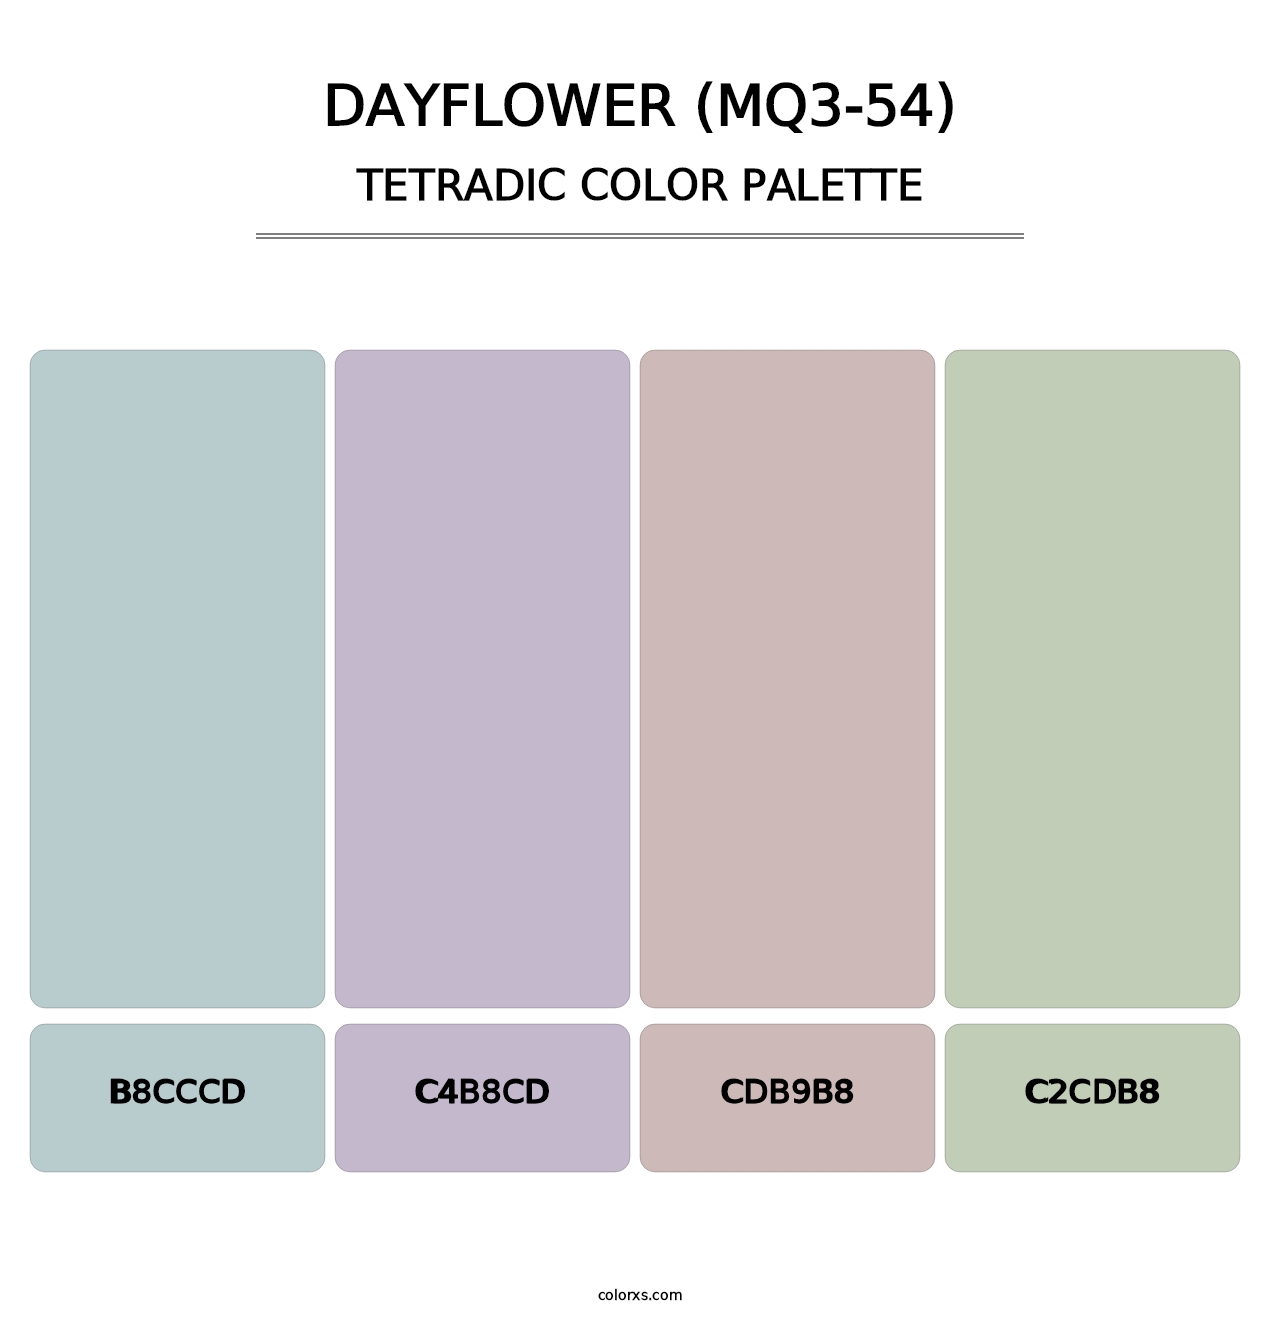 Dayflower (MQ3-54) - Tetradic Color Palette